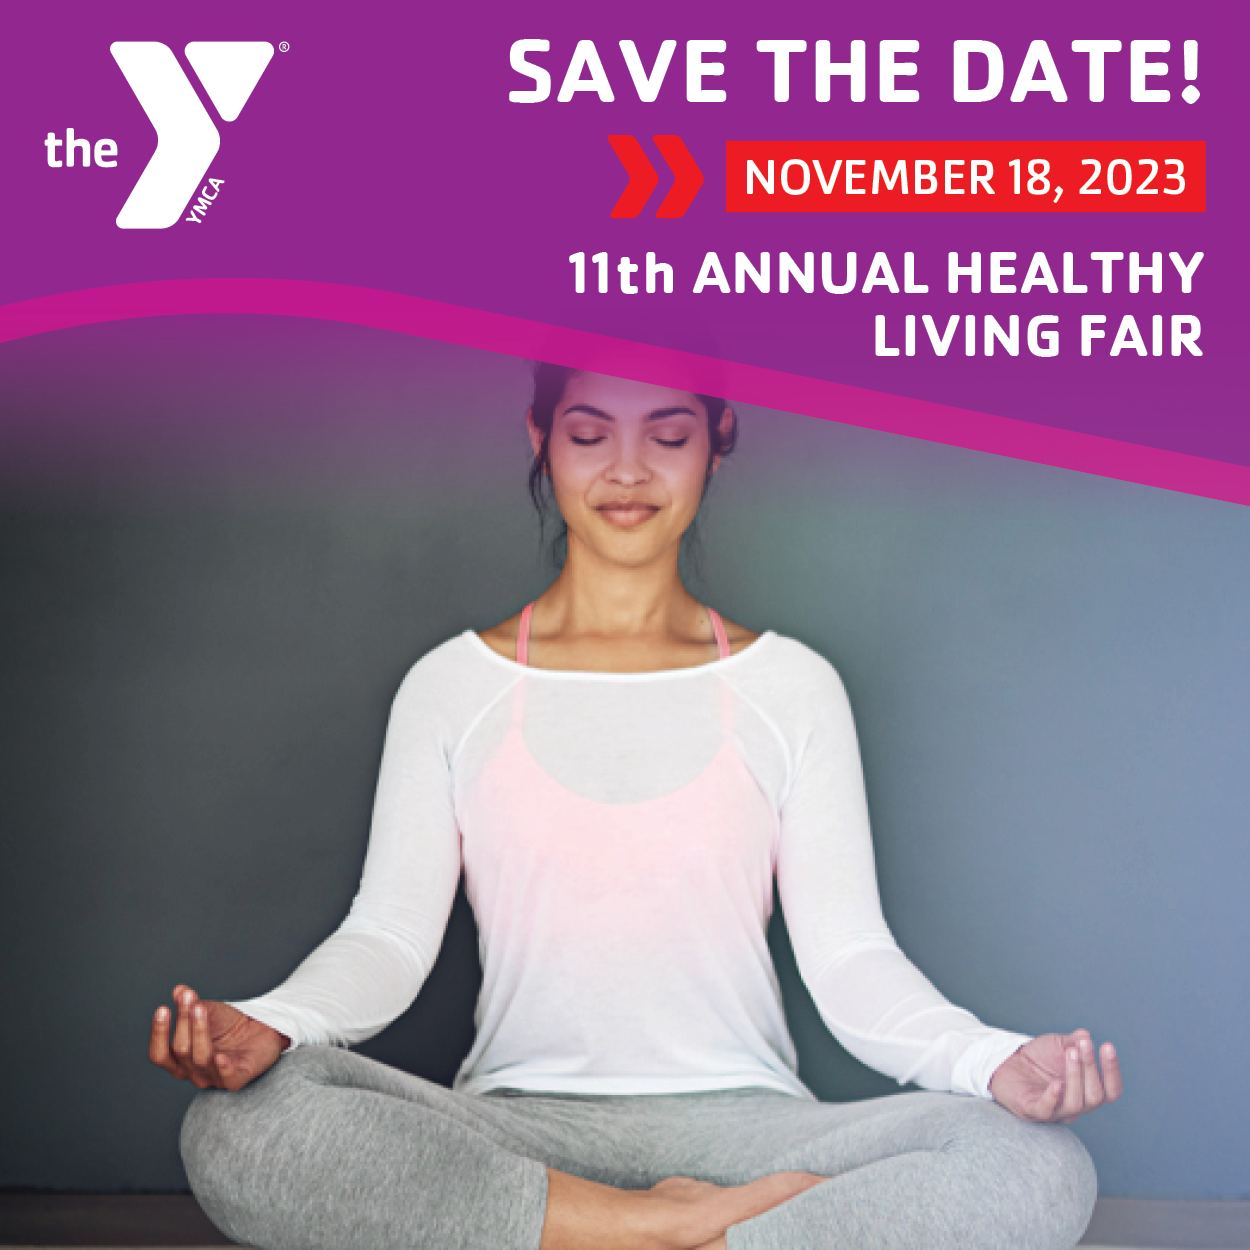 Save the Date: 11th Annual Healthy Living Fair Kenosha YMCA Saturday, November 18th, 10 am - 2 pm